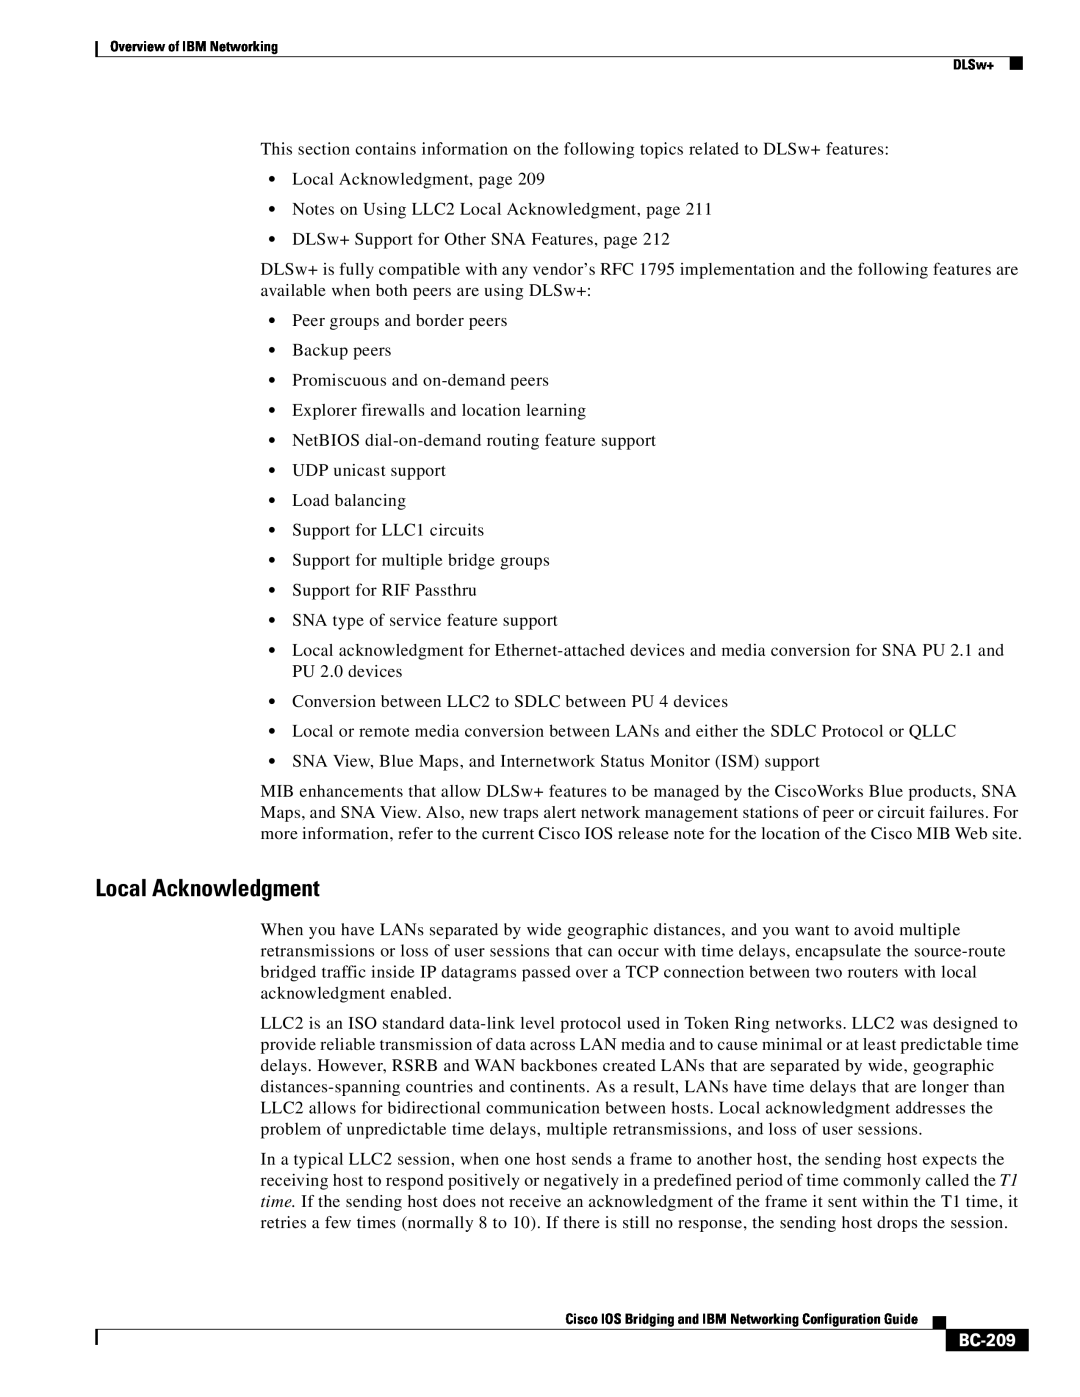 IBM BC-203 manual Local Acknowledgment, BC-209 